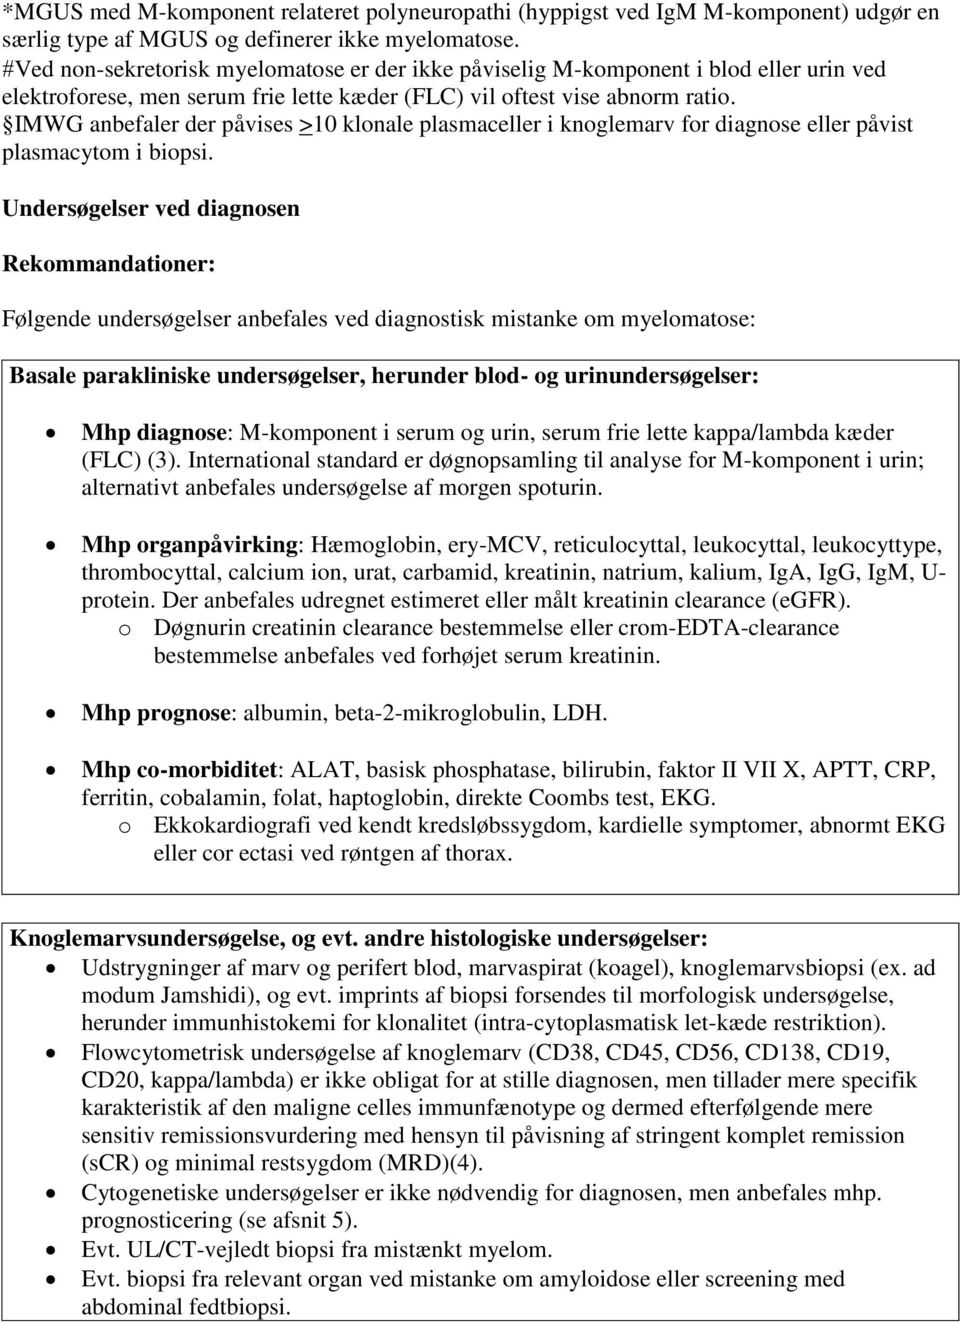 Diagnostik og behandling af myelomatose. Retningslinje 2015 fra Dansk  Myelomatose Studiegruppe (DMSG) - PDF Gratis download